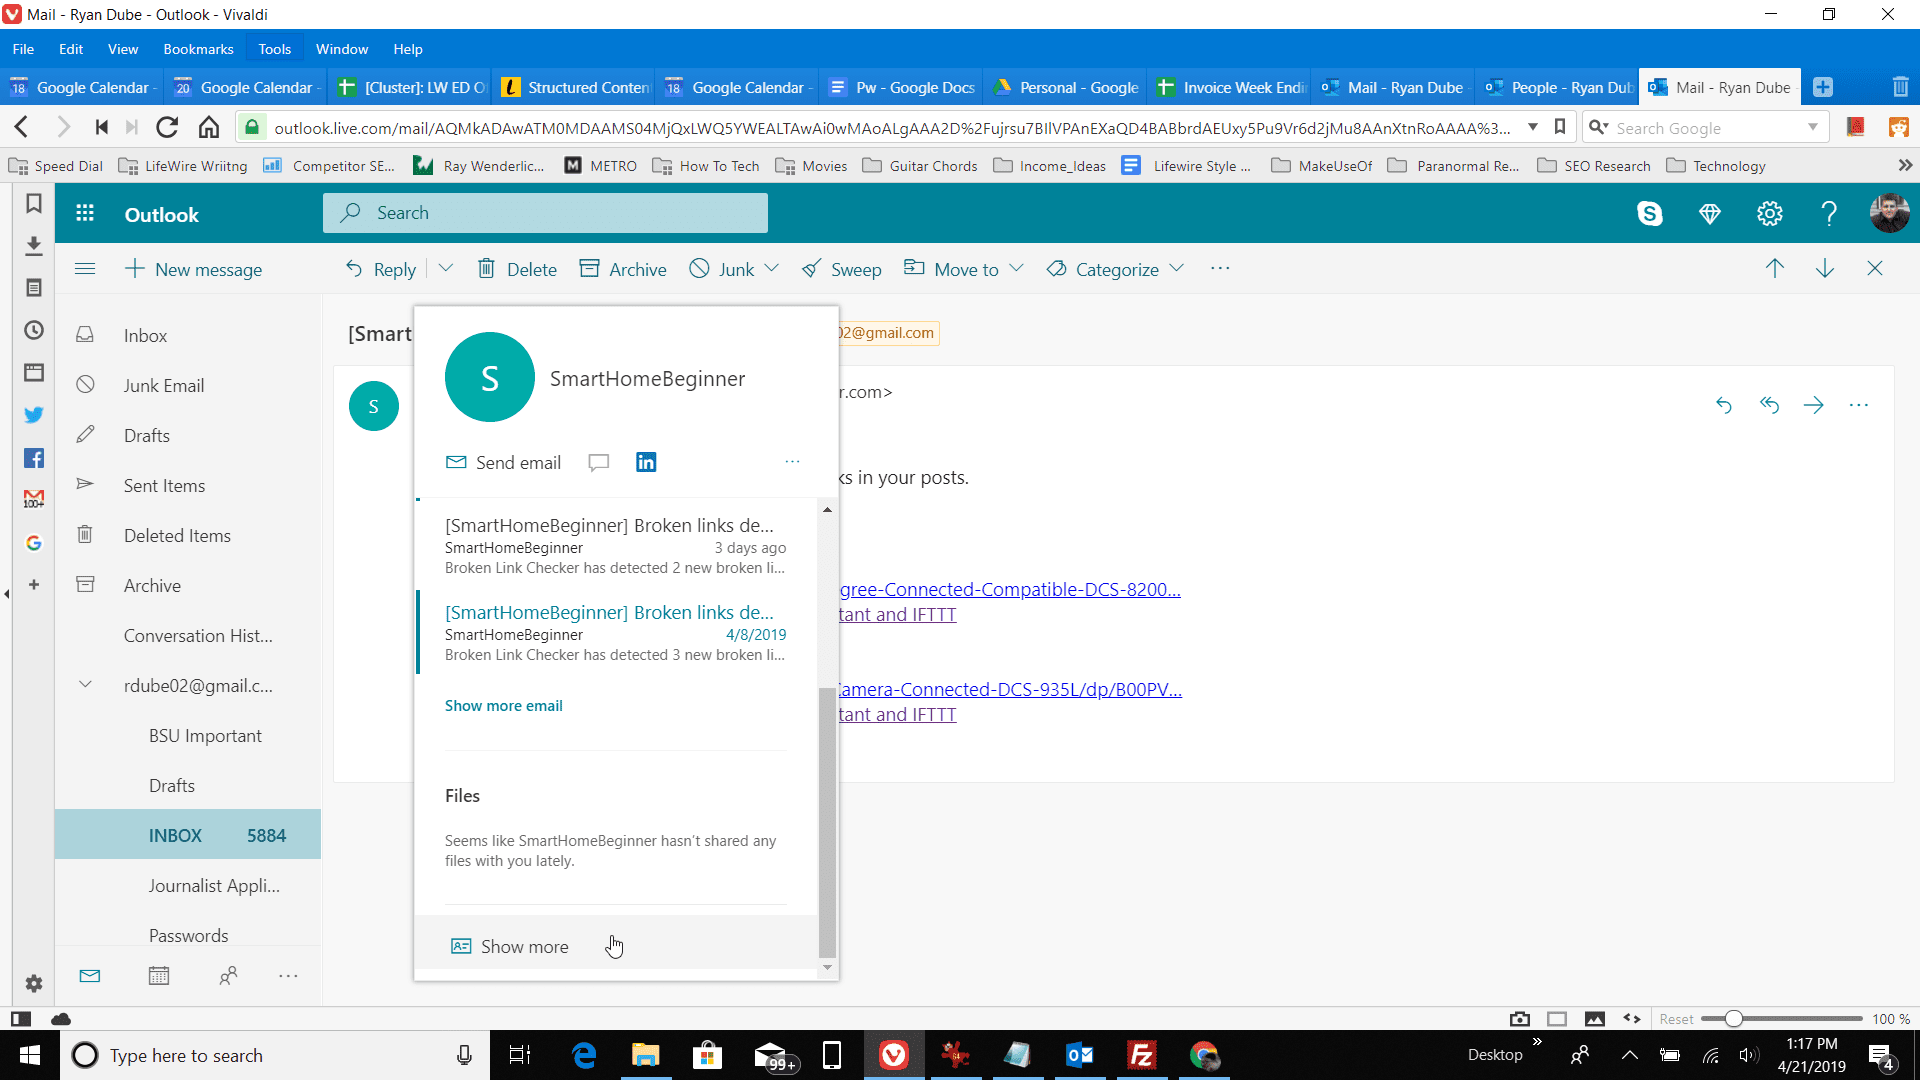 Captura de tela do link Mostrar mais para um contato do Outlook.com